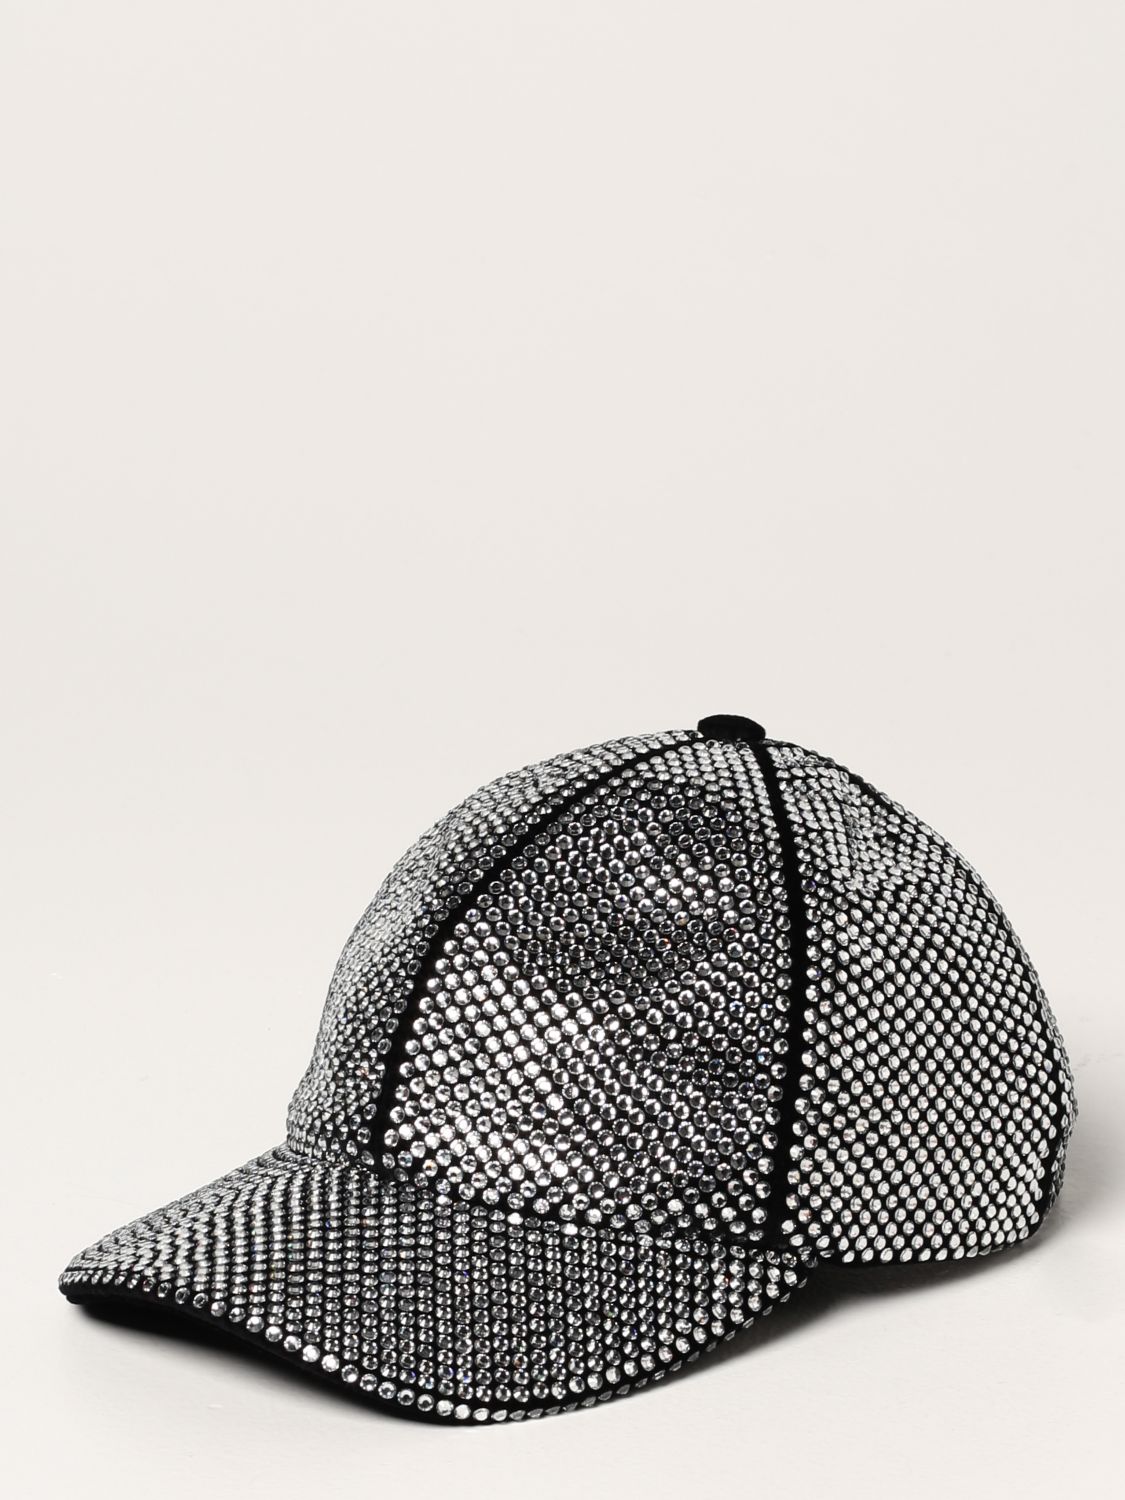 MIU MIU： 帽子女士- 黑色| Miu Miu 帽子5HC2742DDK 在线就在GIGLIO.COM